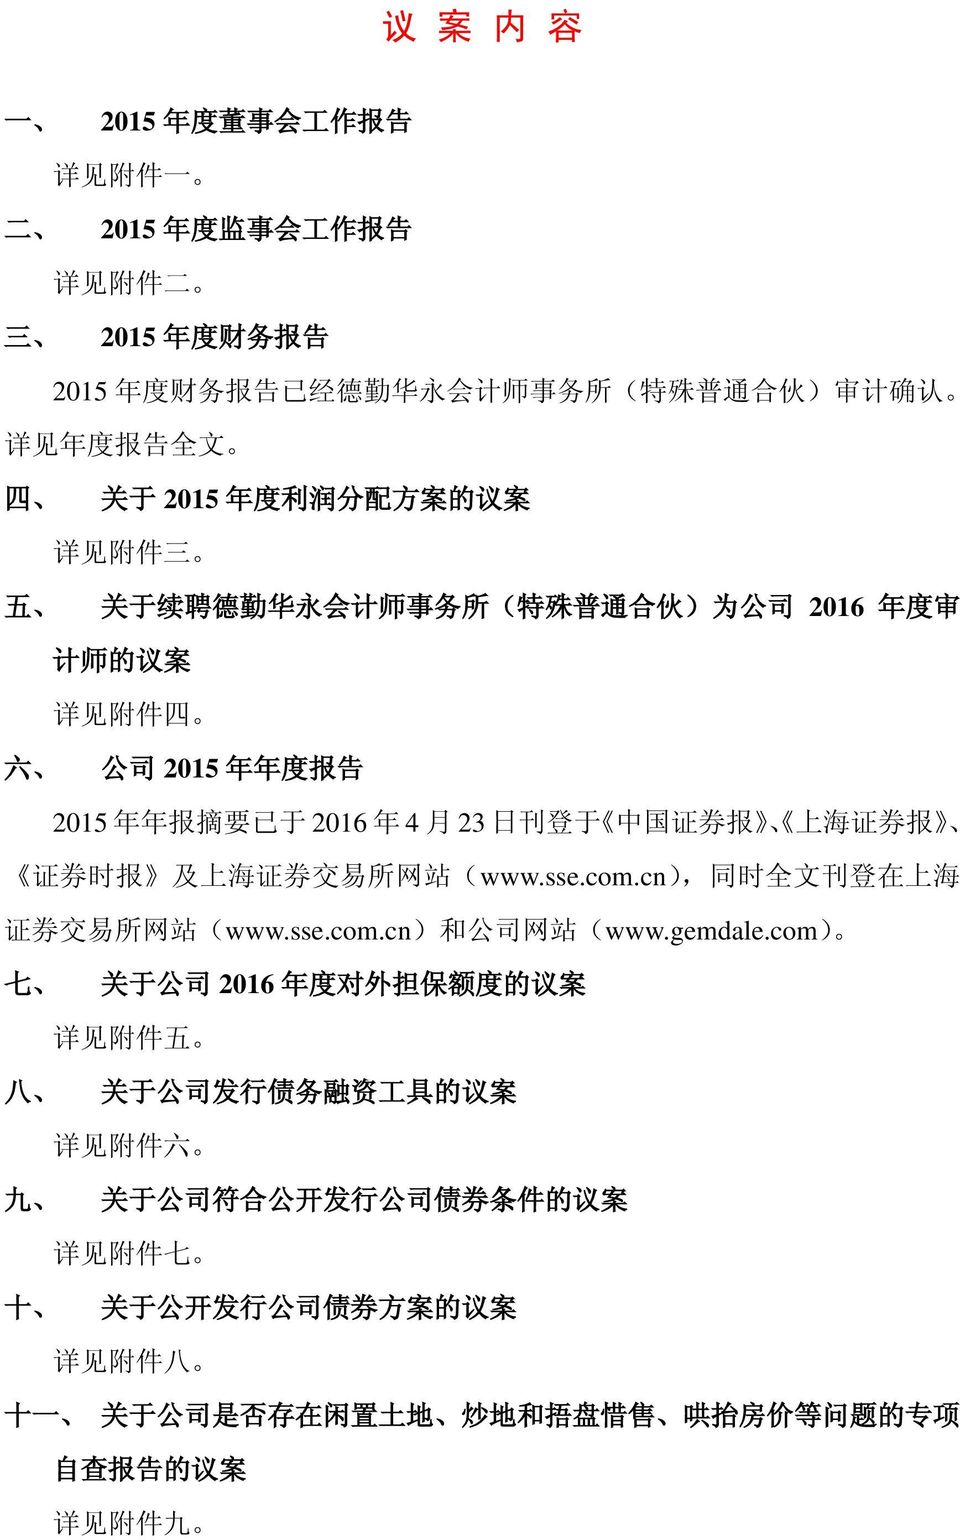 证 券 时 报 及 上 海 证 券 交 易 所 网 站 (www.sse.com.cn), 同 时 全 文 刊 登 在 上 海 证 券 交 易 所 网 站 (www.sse.com.cn) 和 公 司 网 站 (www.gemdale.